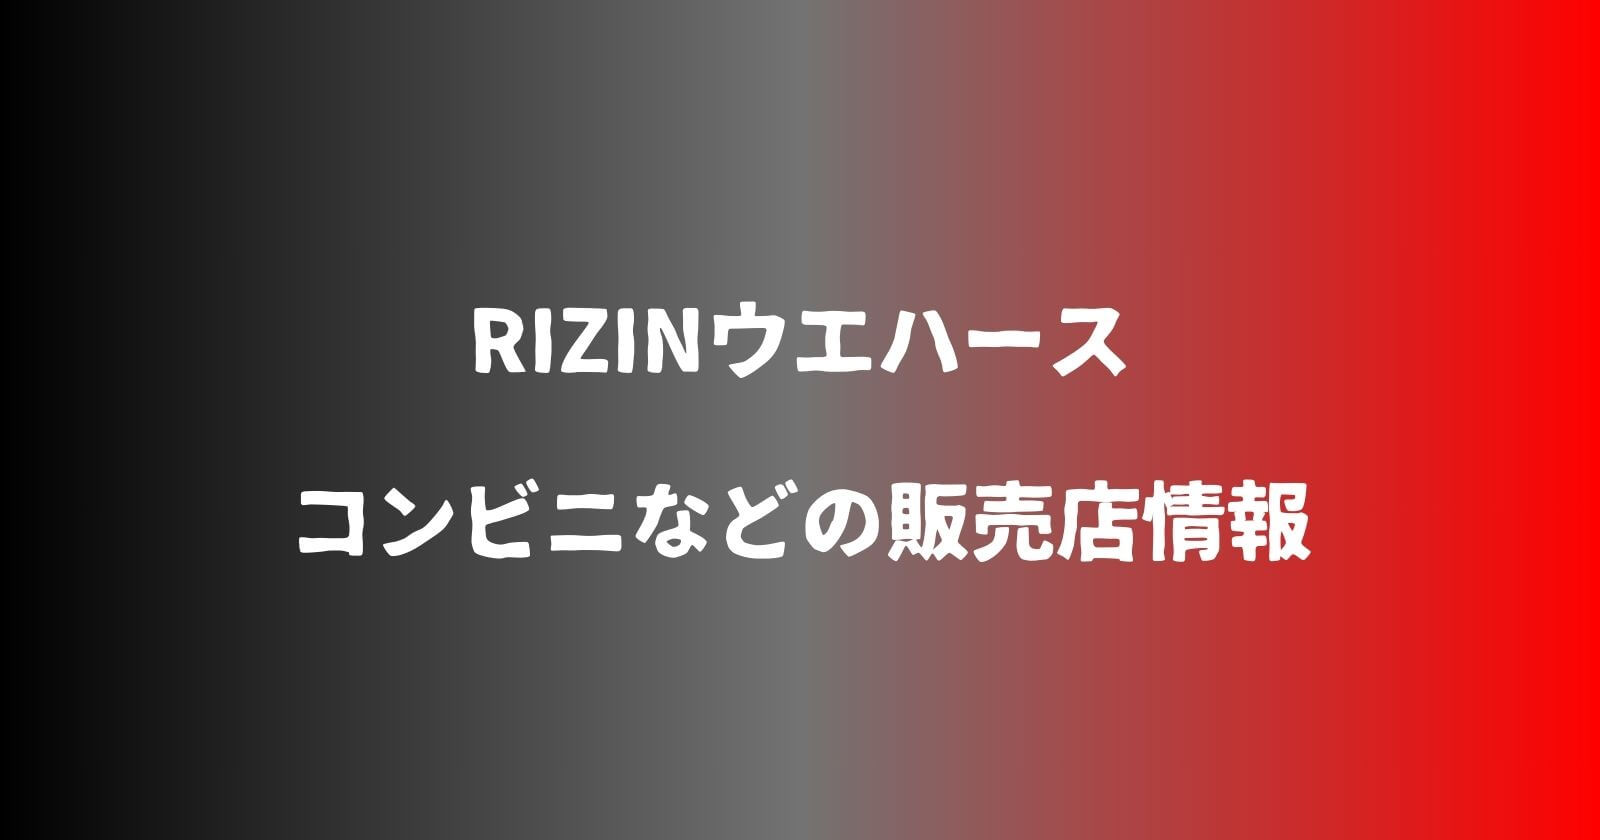 RIZINウエハースが売ってるコンビニなどの販売店